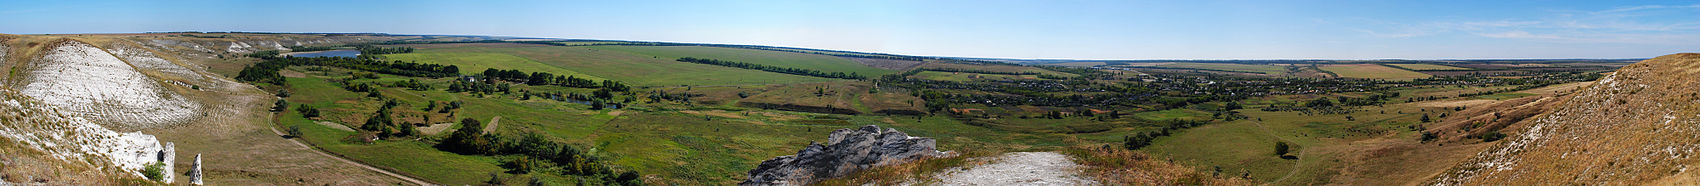 Панорама 270° с меловых скал. Вид на Белокузьминовку и окрестности.